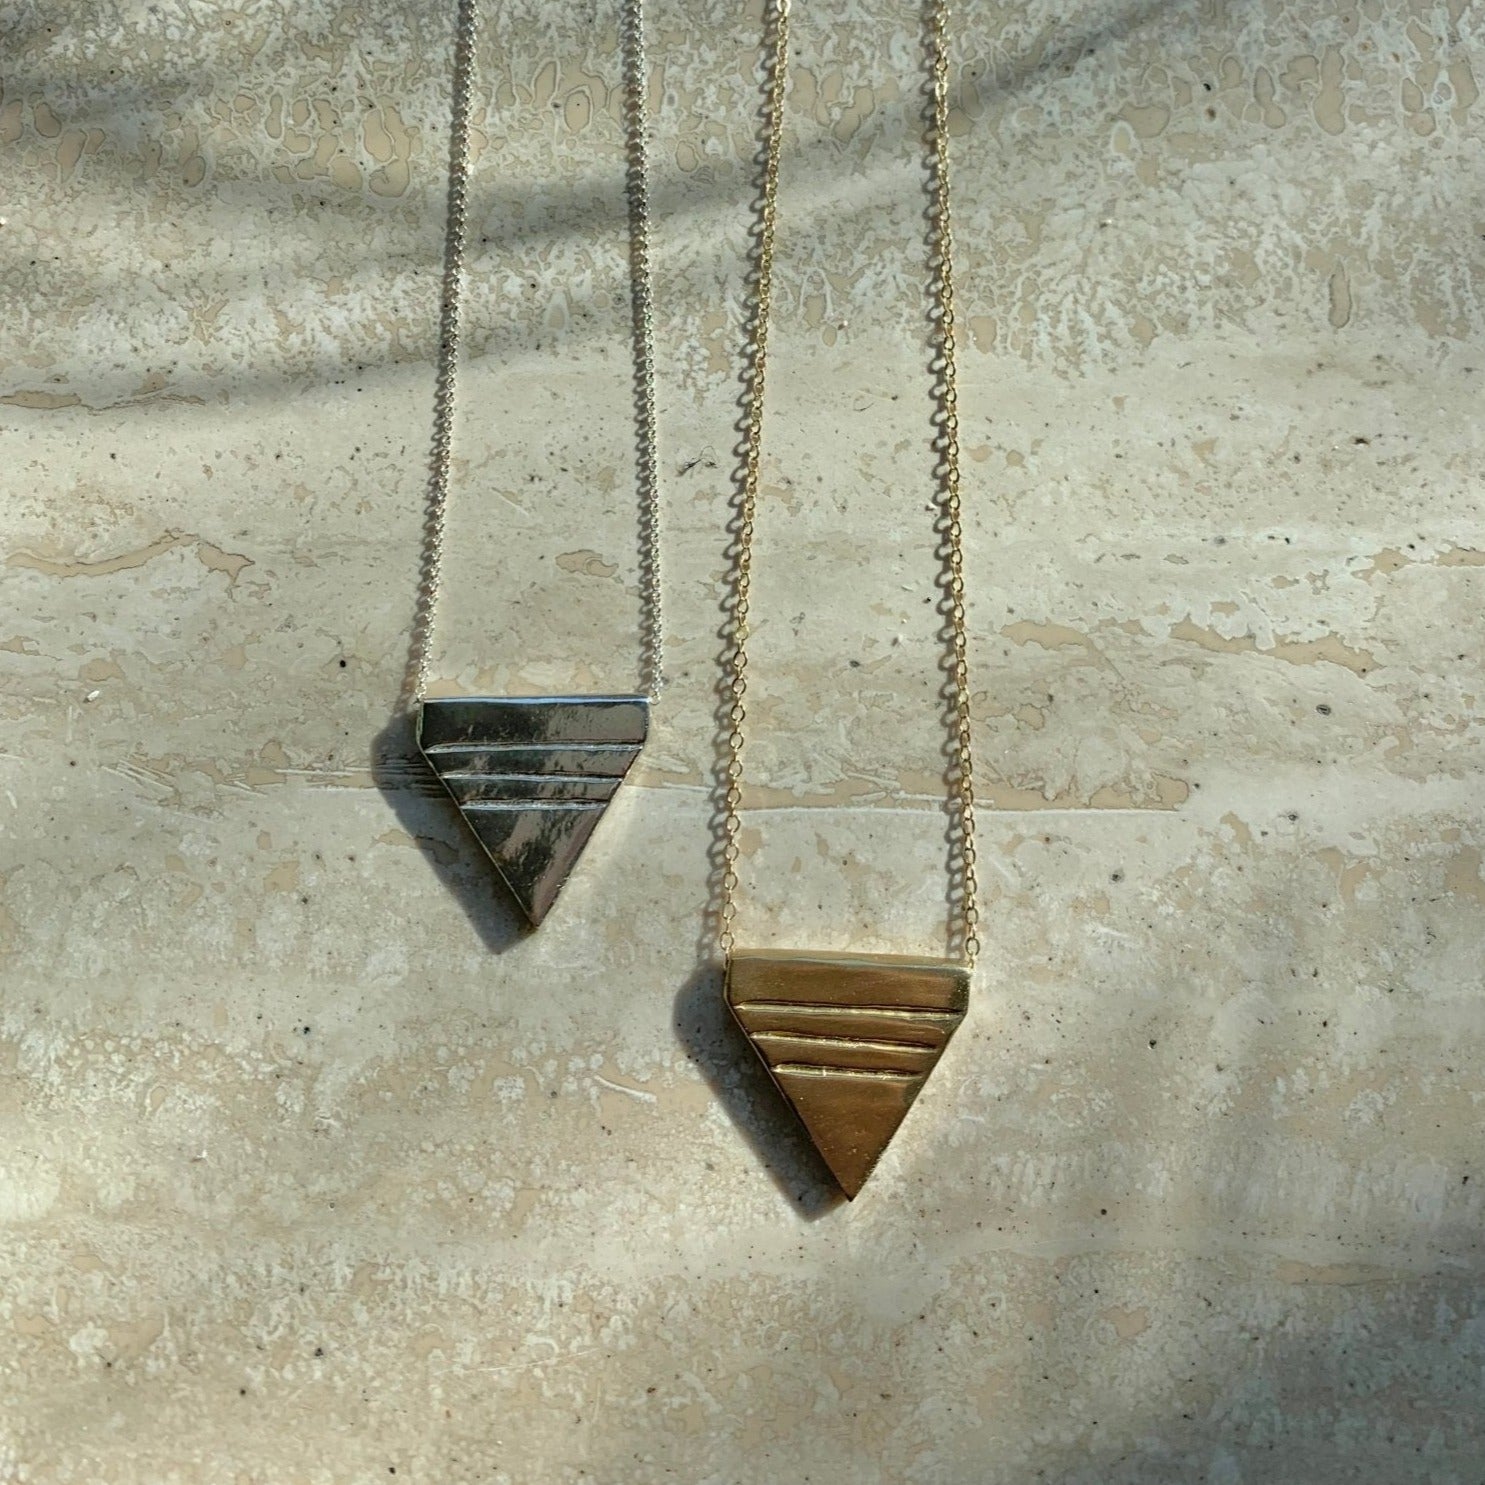 Rituals Necklace - Symbolic Triangle Necklace - Archive Sale - Dea Dia